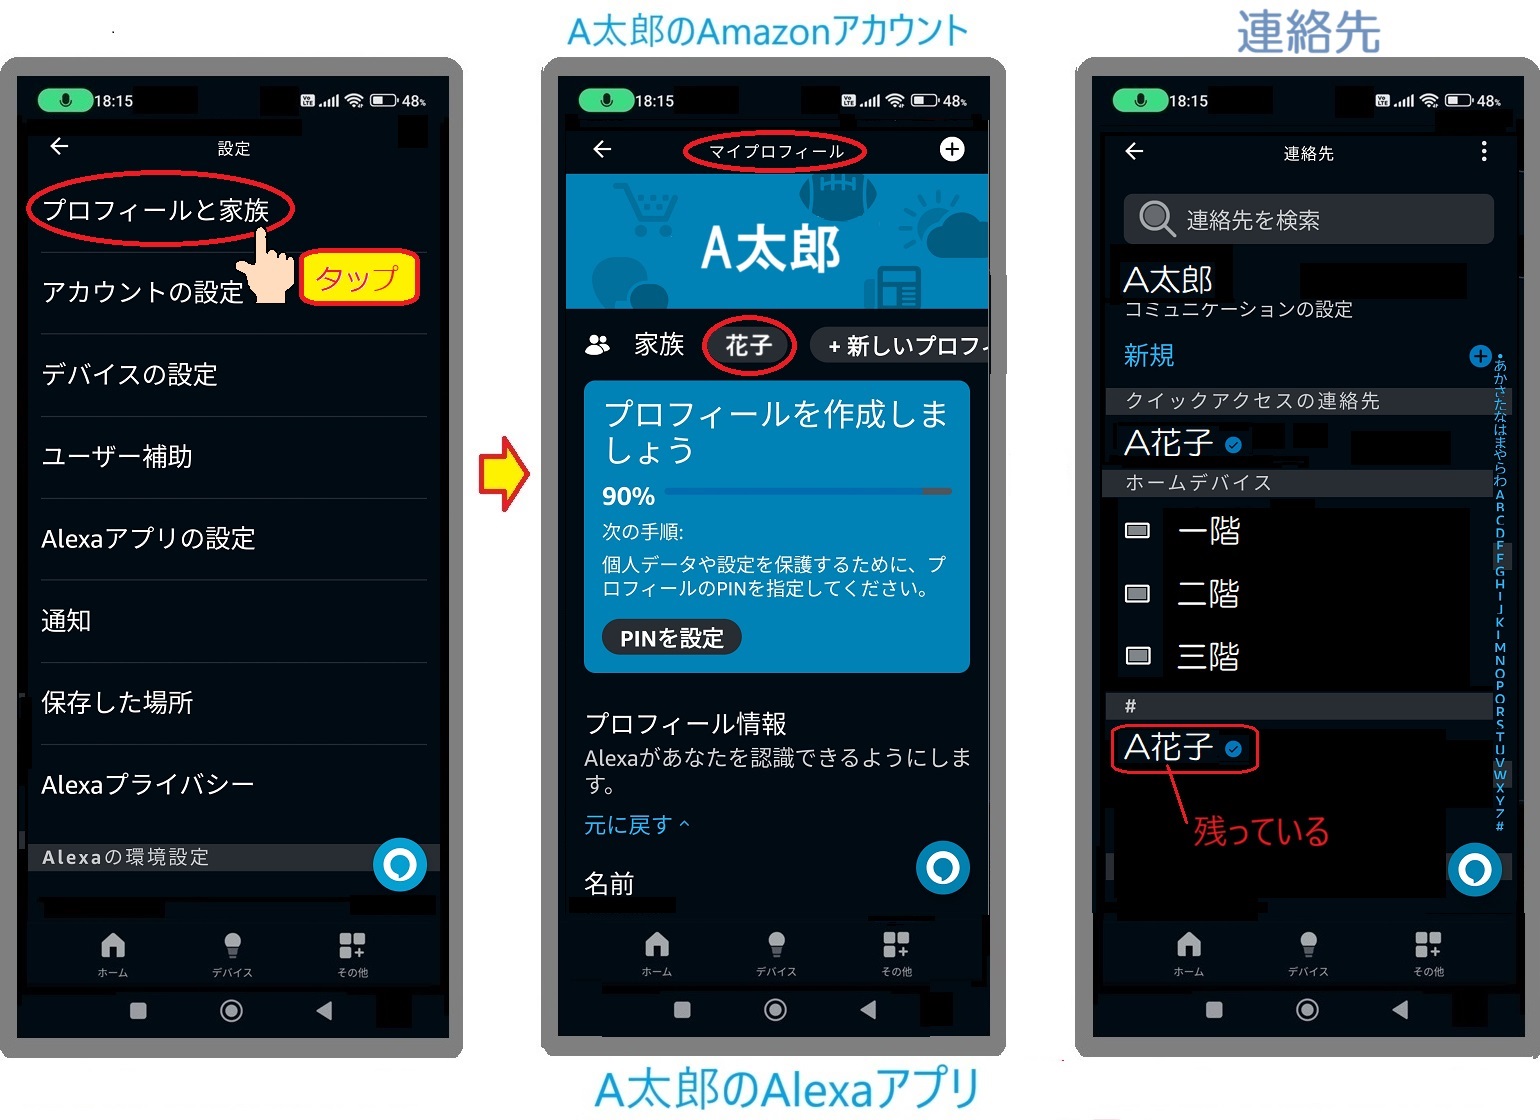 A太郎のAmazonアカウントでログインした太郎のAlexaアプリのプロフィールと家族に花子が表示されていて連絡先にA花子が残っている